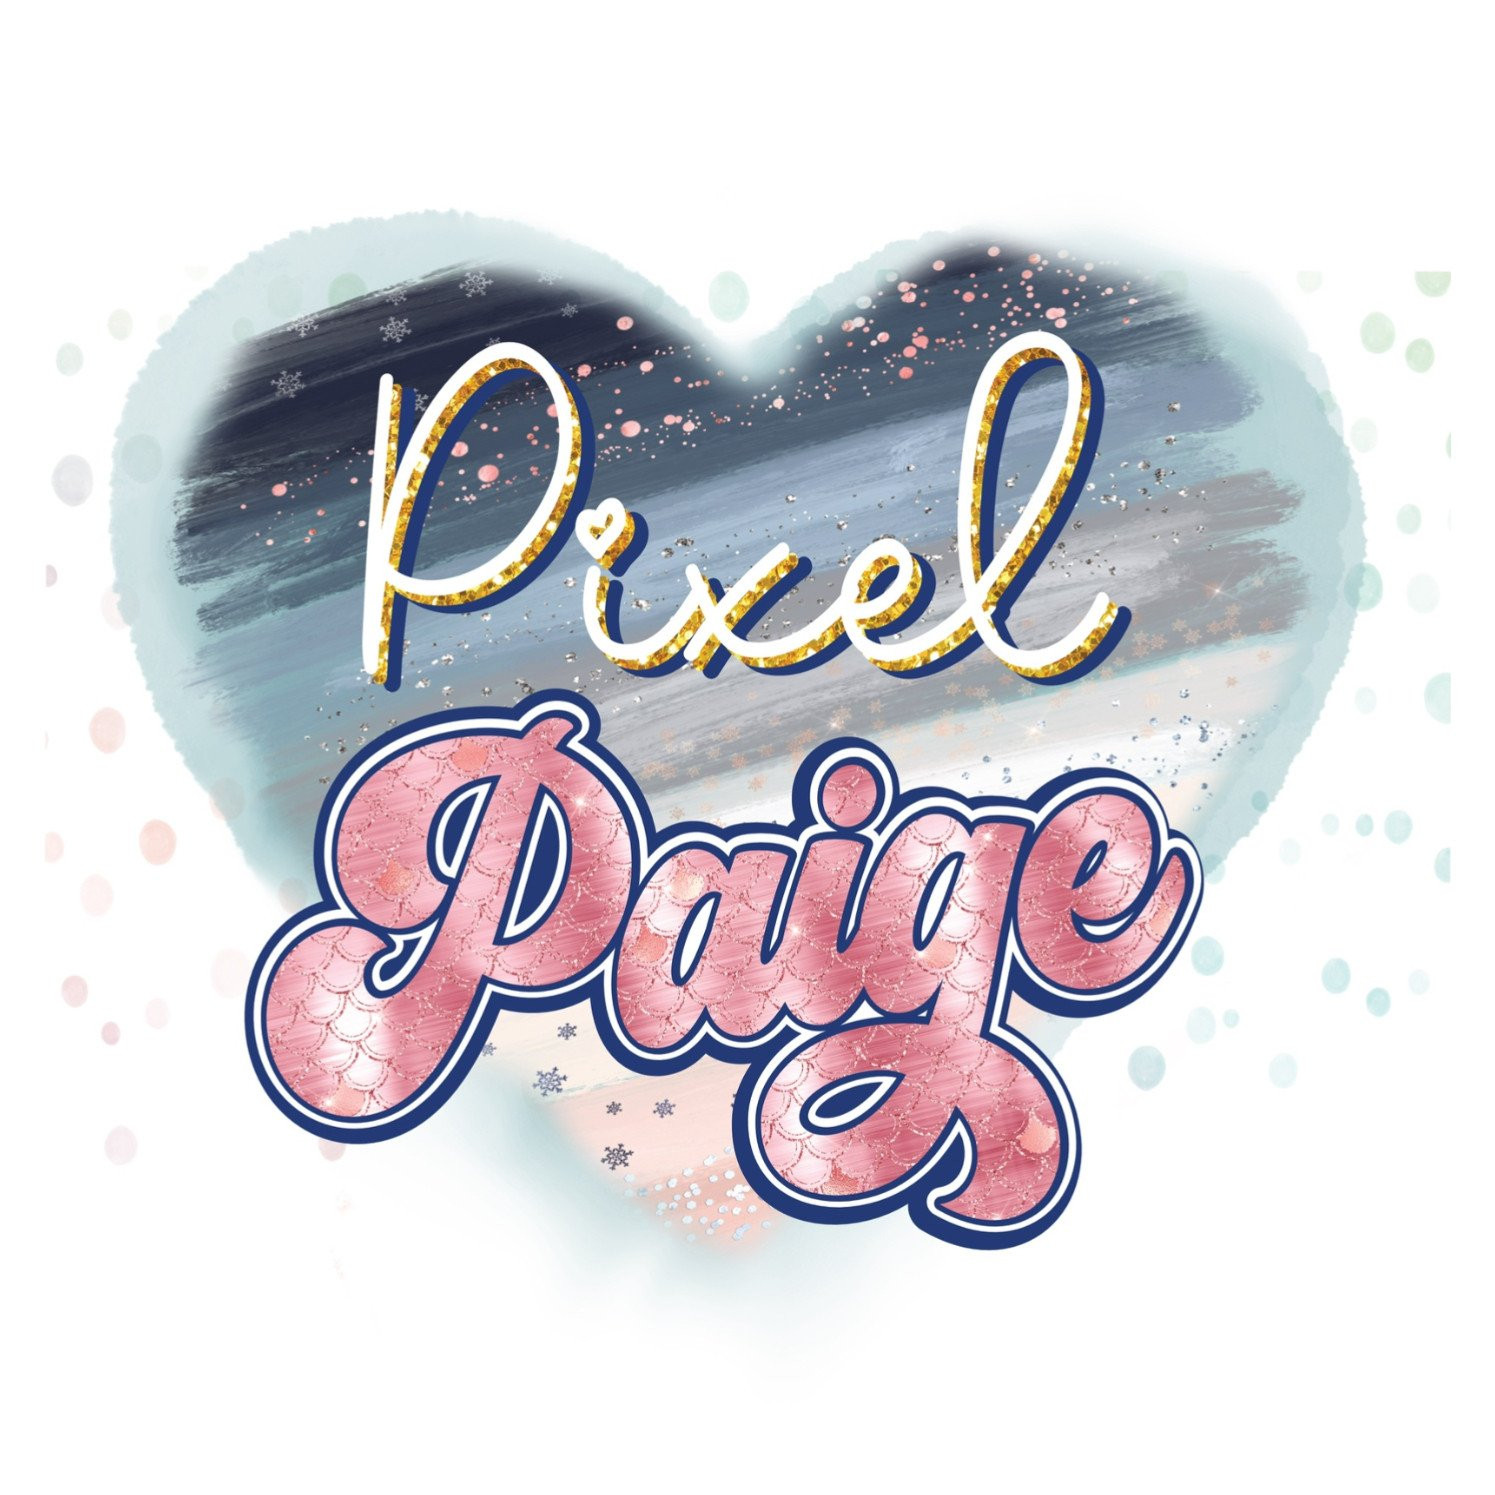 Pixel Paige StudioPhoto de profil de